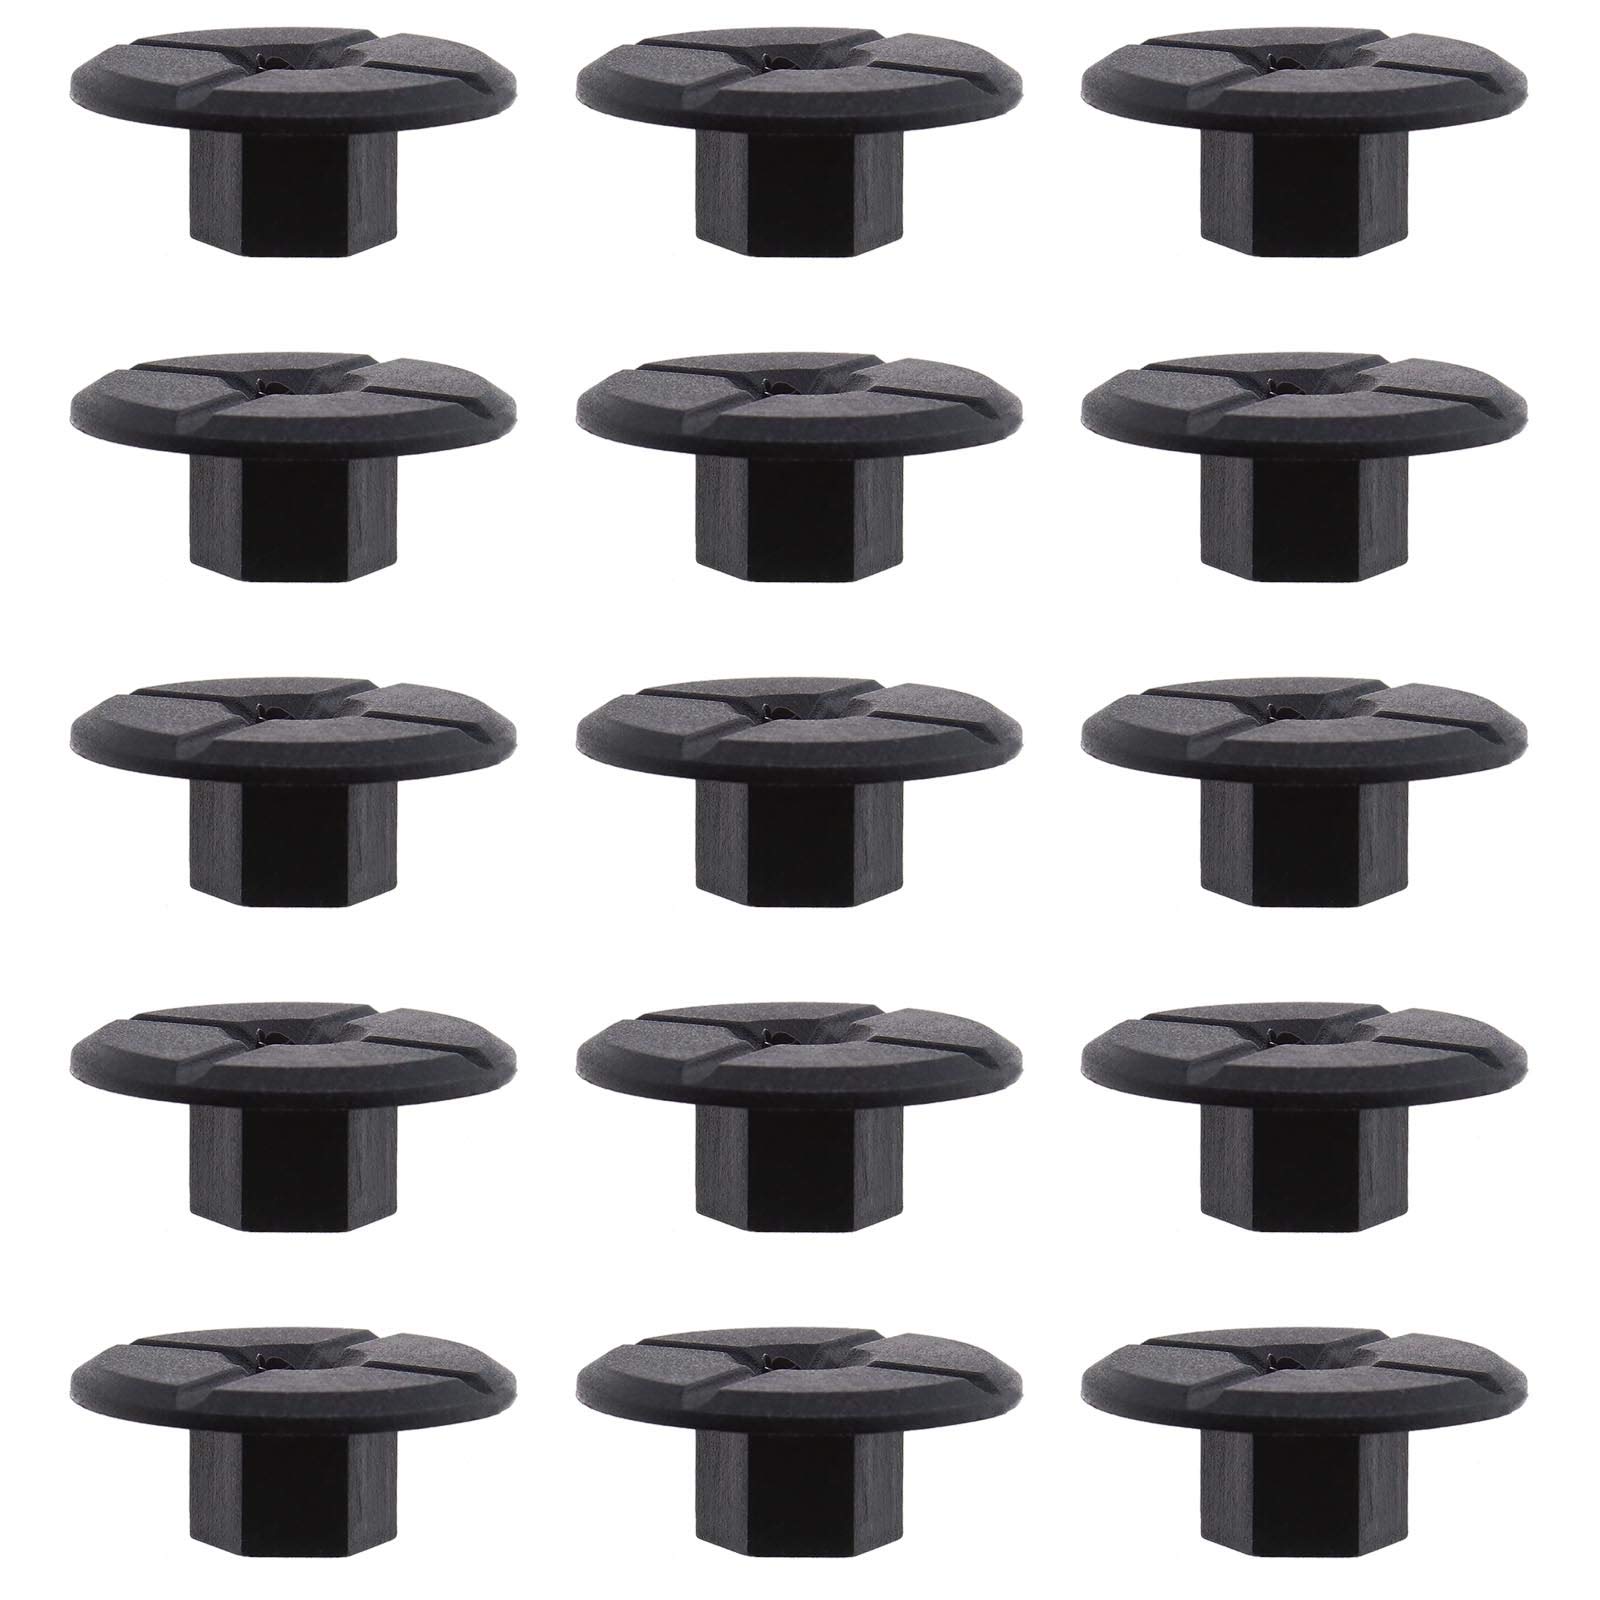 50 Stück 4 mm Gewindefreie Kunststoffmuttern schwarz für Radlaufverkleidung Verkleidung Spritzschutz Unterschale Stoßstange 2019900050 51711958025 von OTOTEC